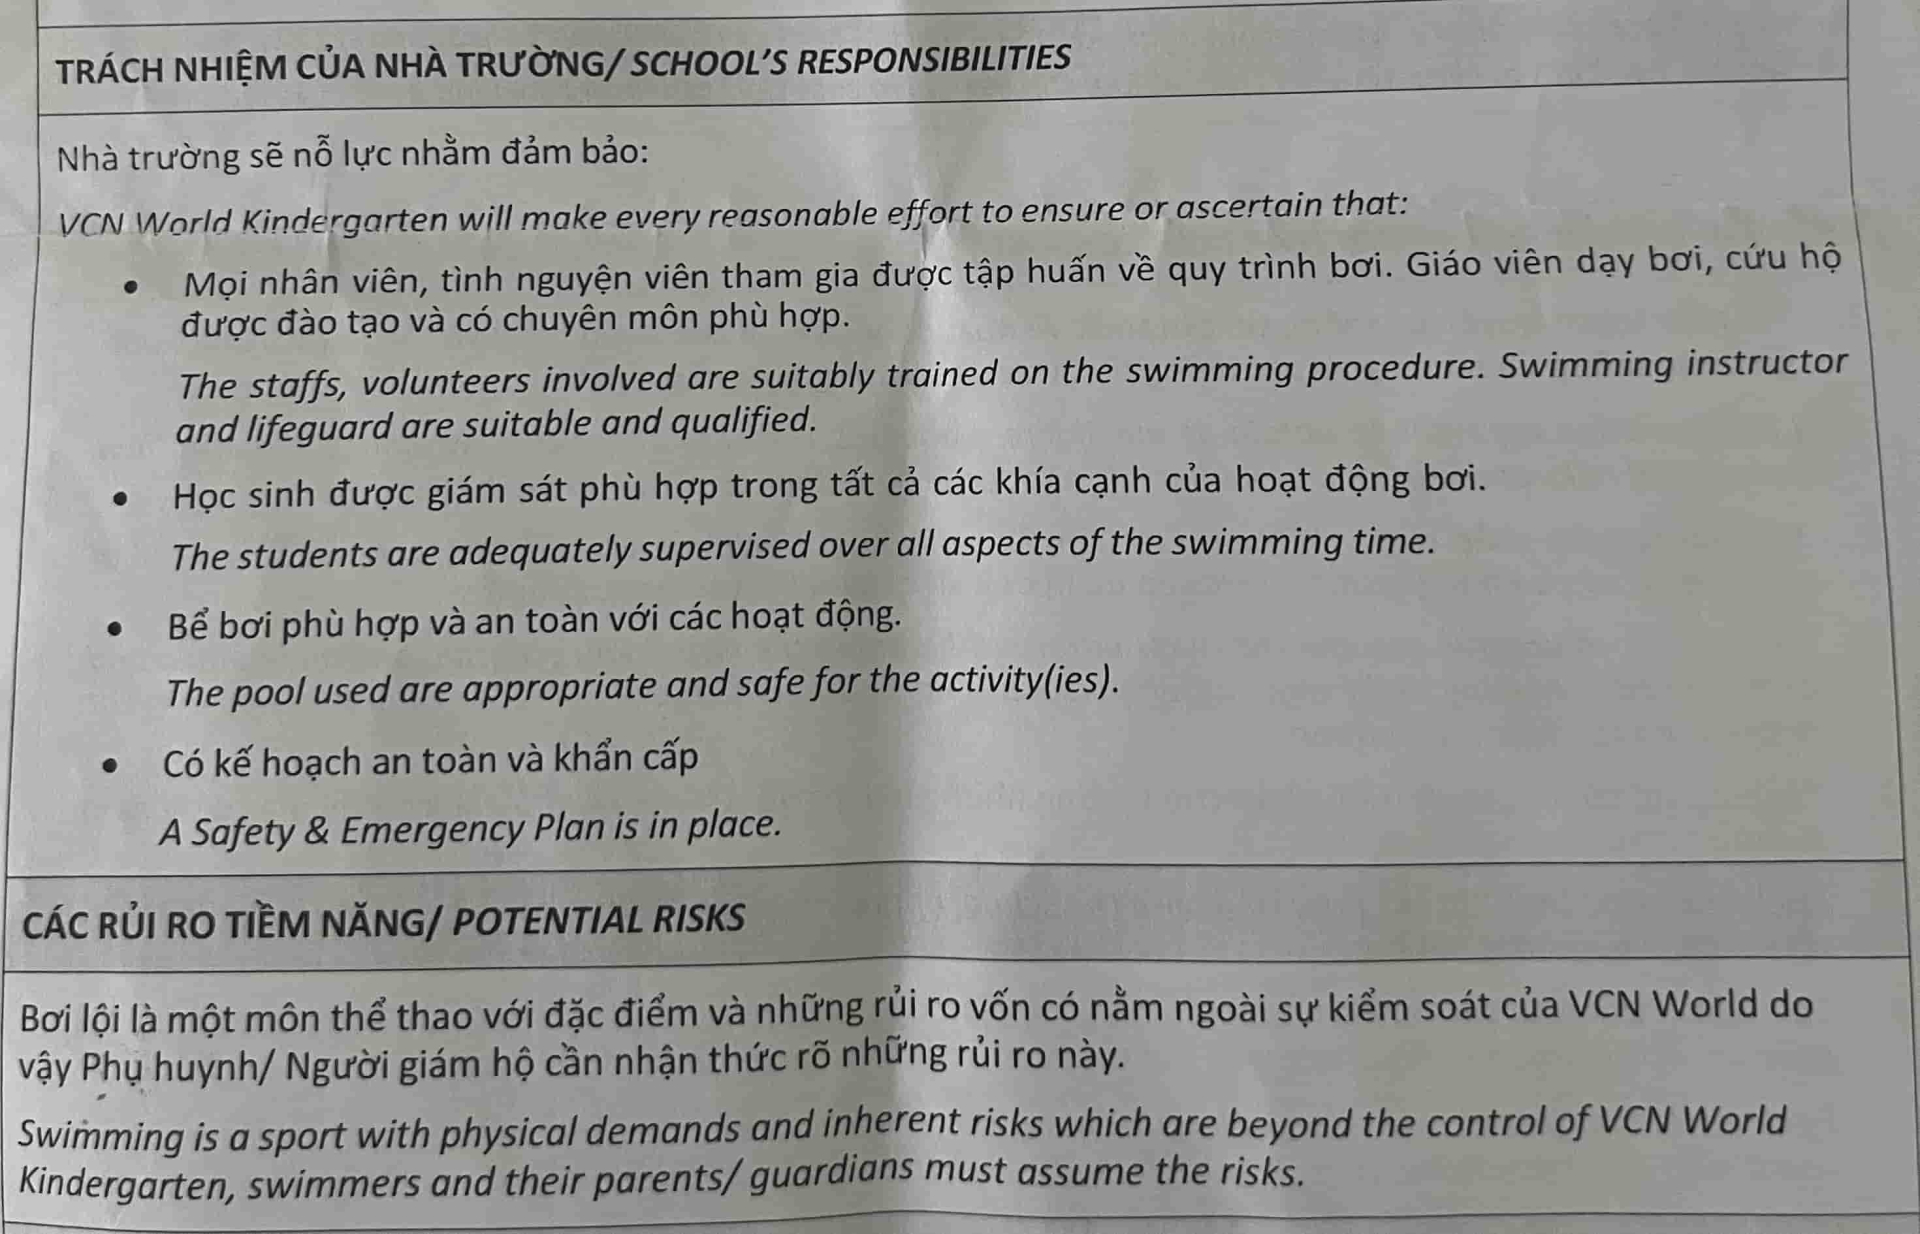 Nội dung yêu cầu cha mẹ nhận thức rõ về rủi ro của hoạt động bơi và nằm ngoài sự kiểm soát của nhà trường.